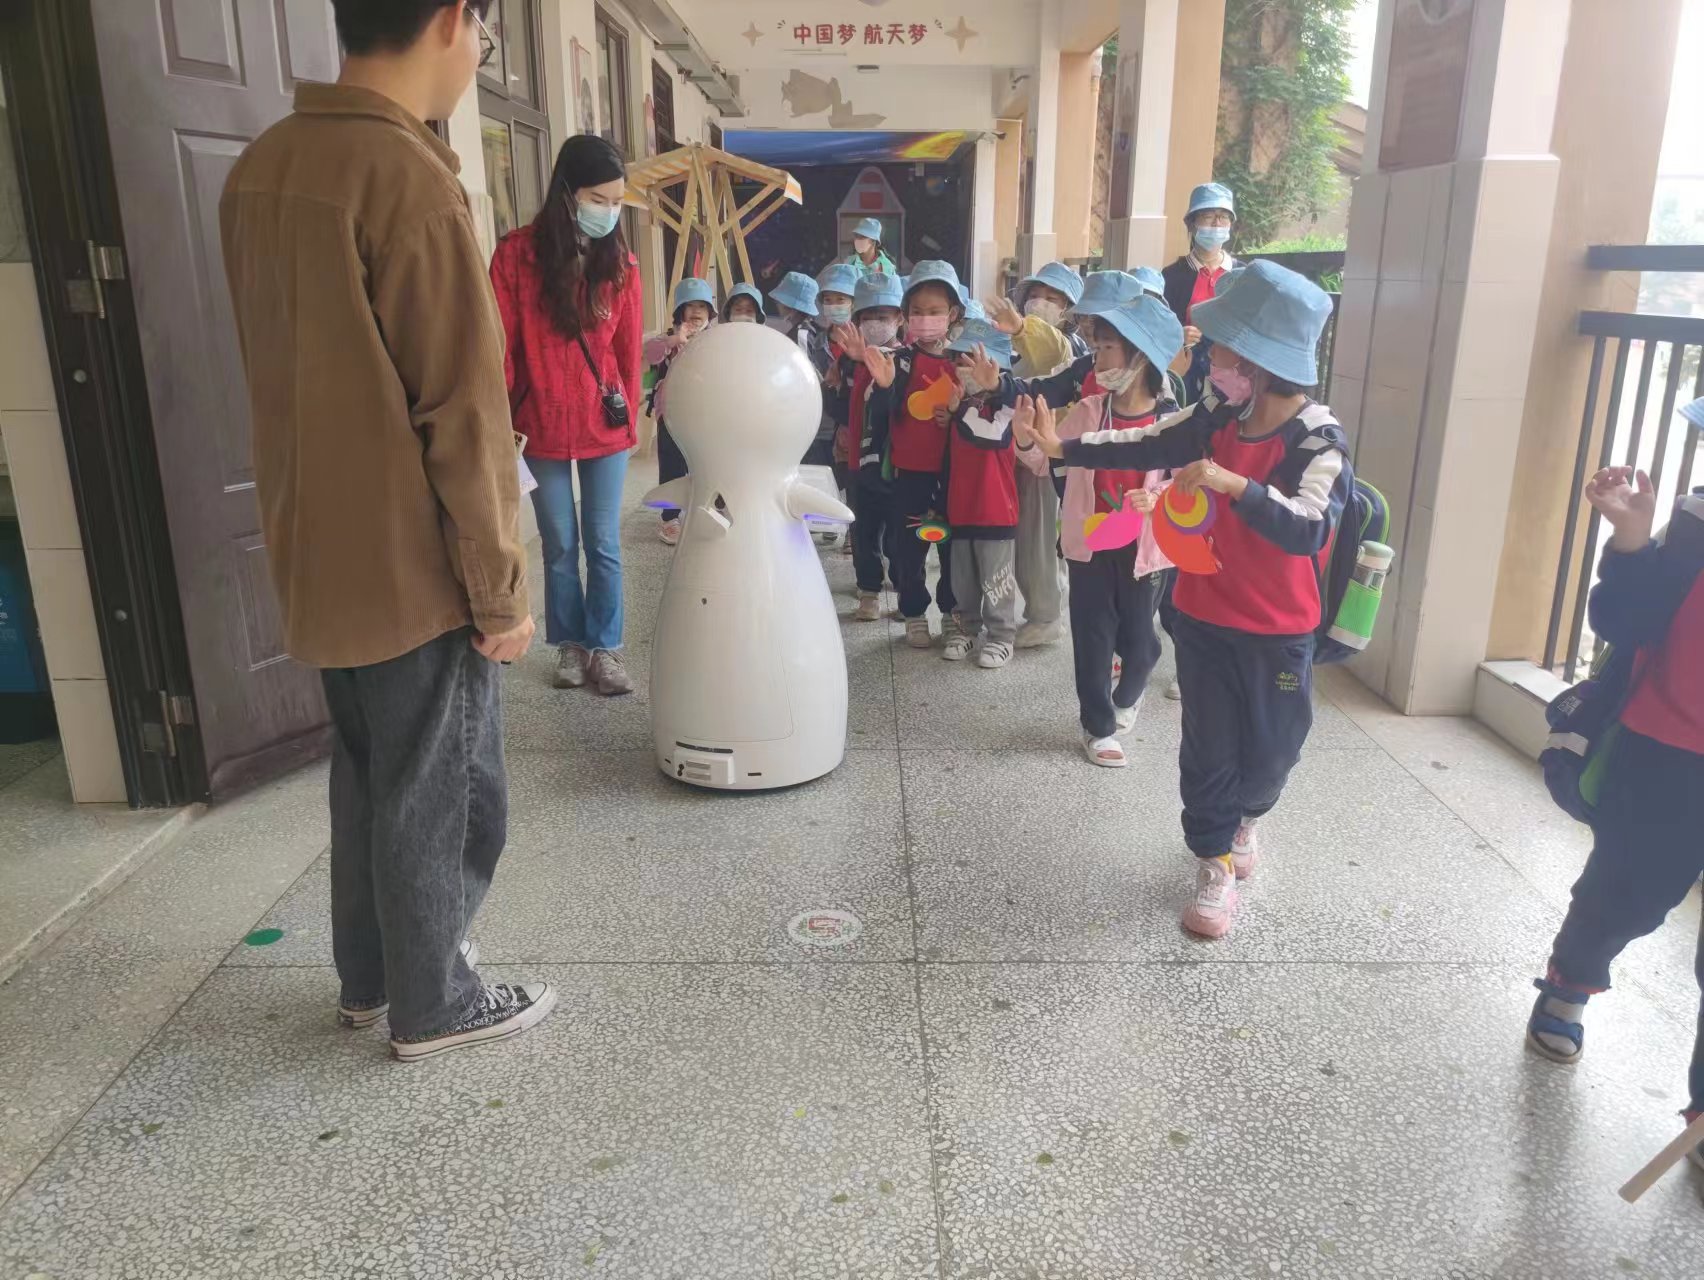 Snow Robot, kaunselor baru Sekolah Rendah Qingyuan Zhongxin~